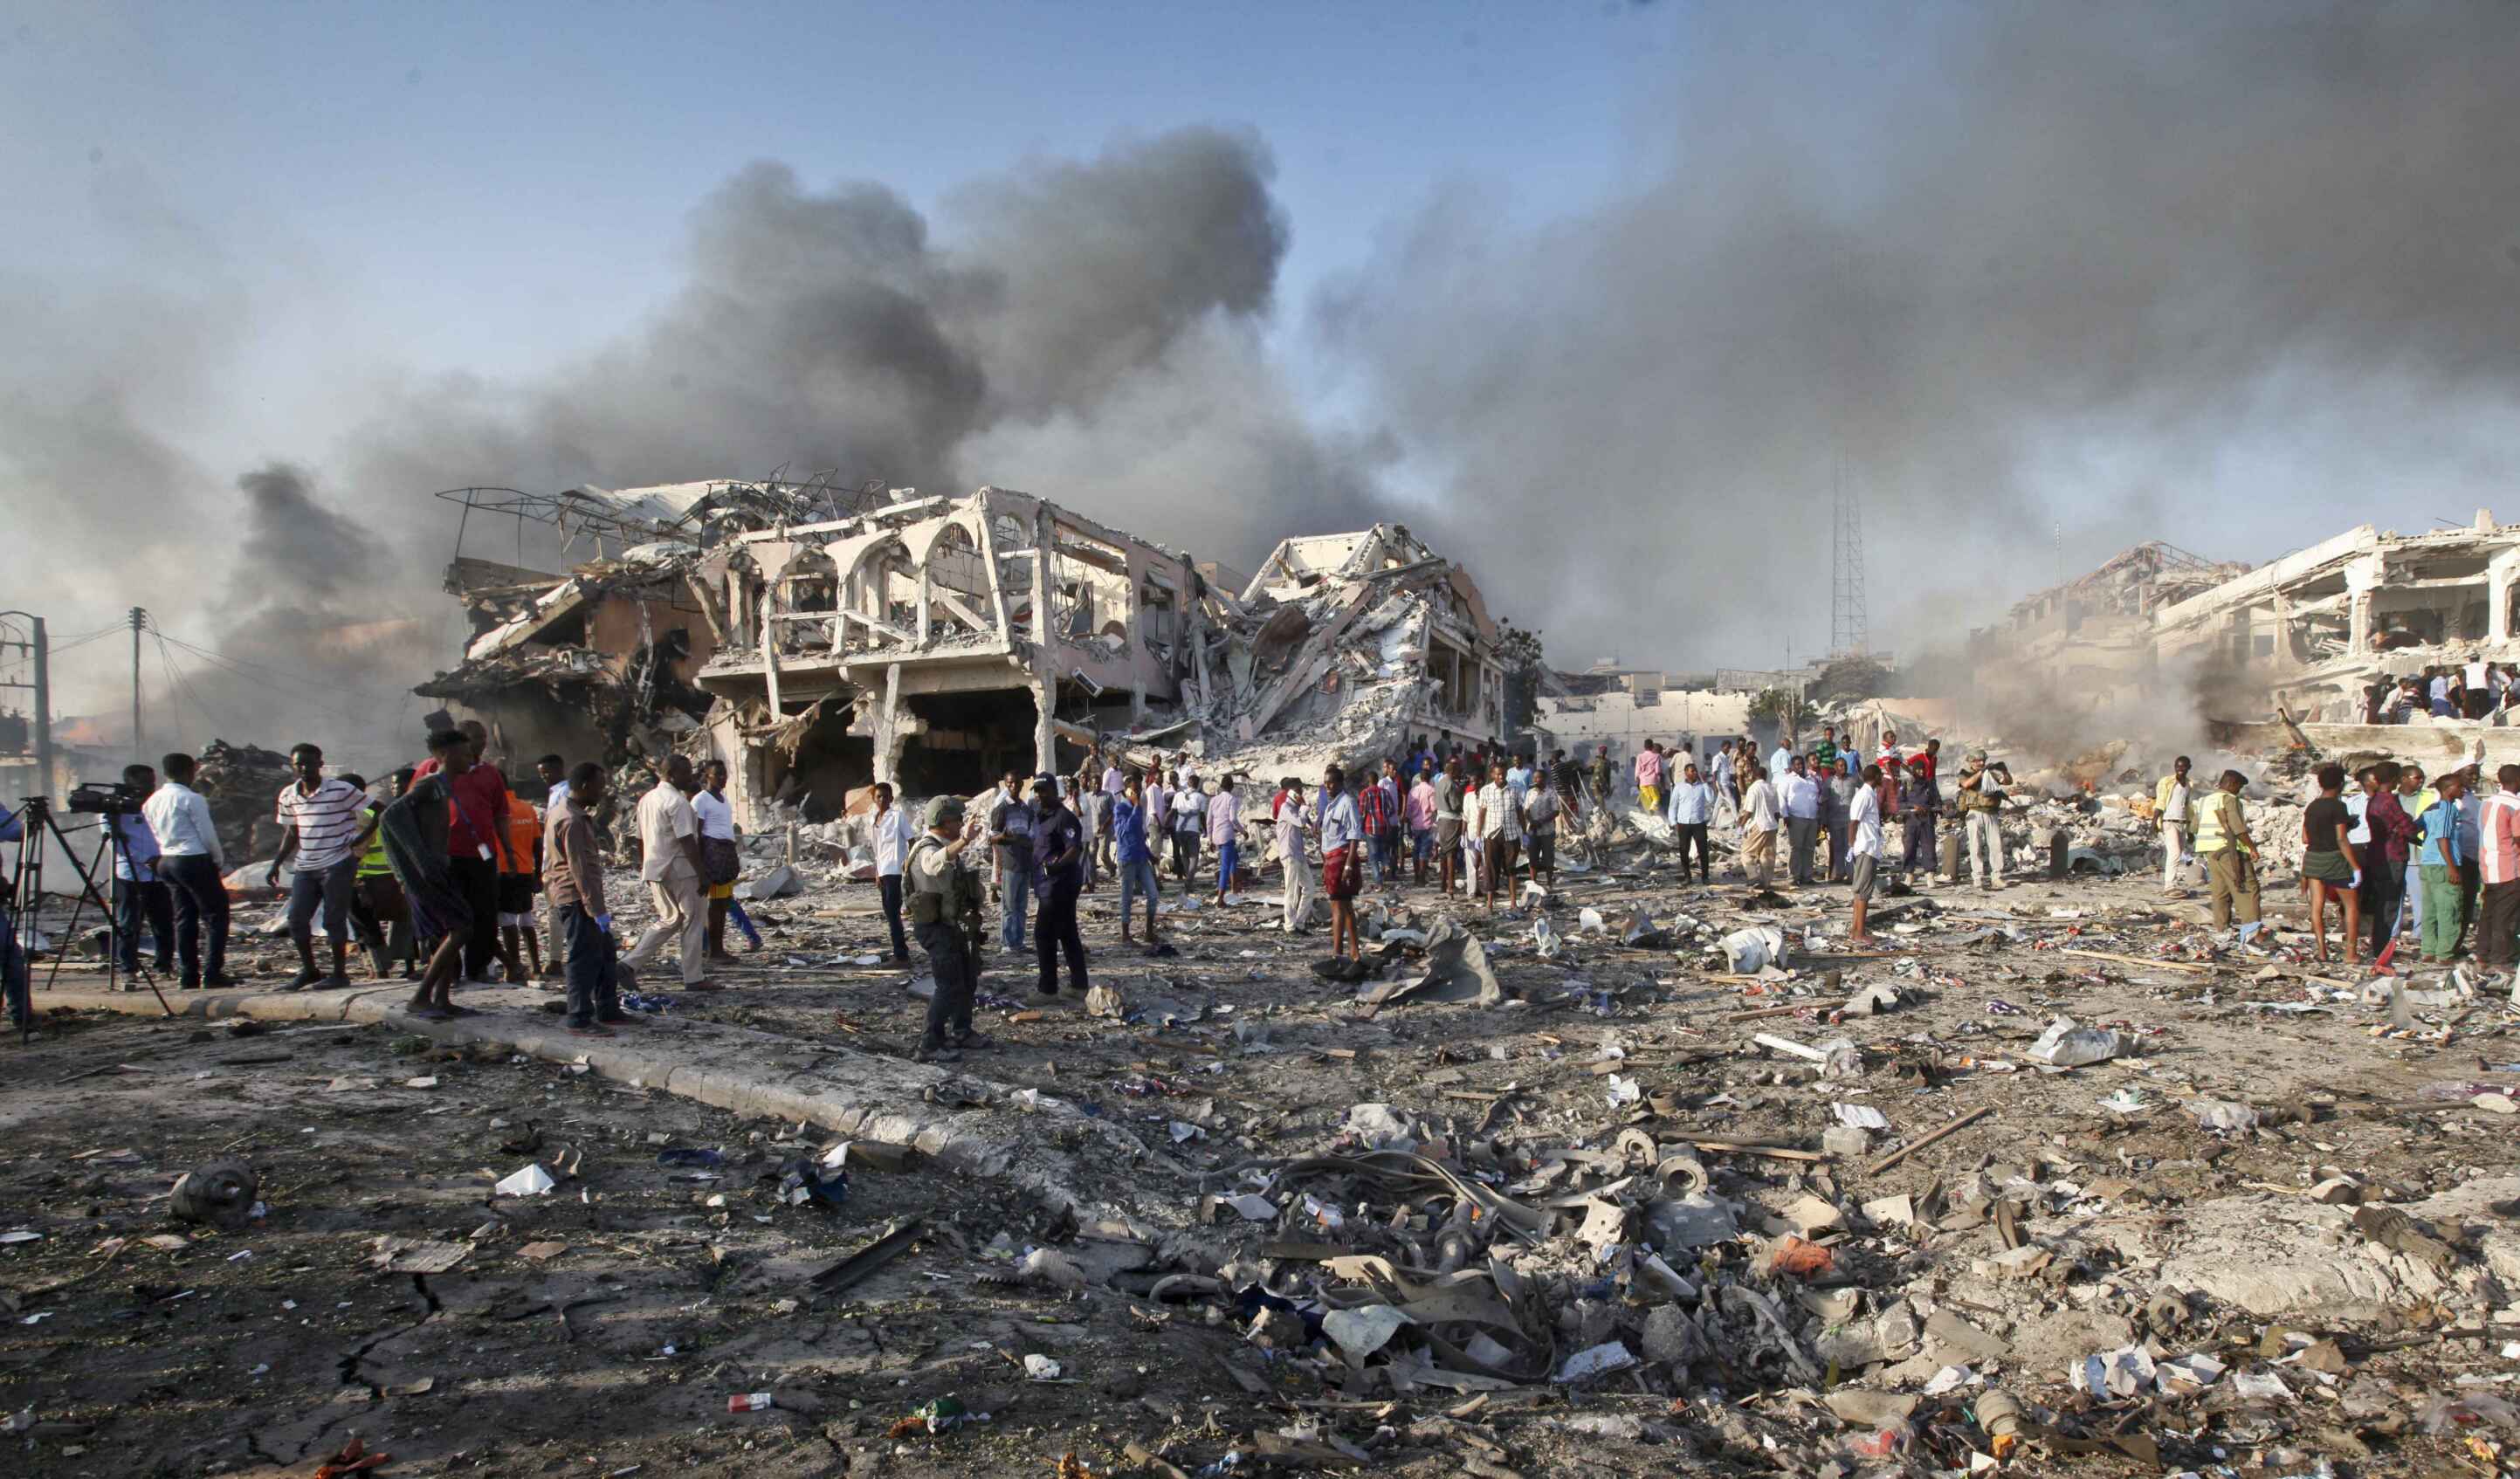 索馬里汽車炸彈襲擊至少40死